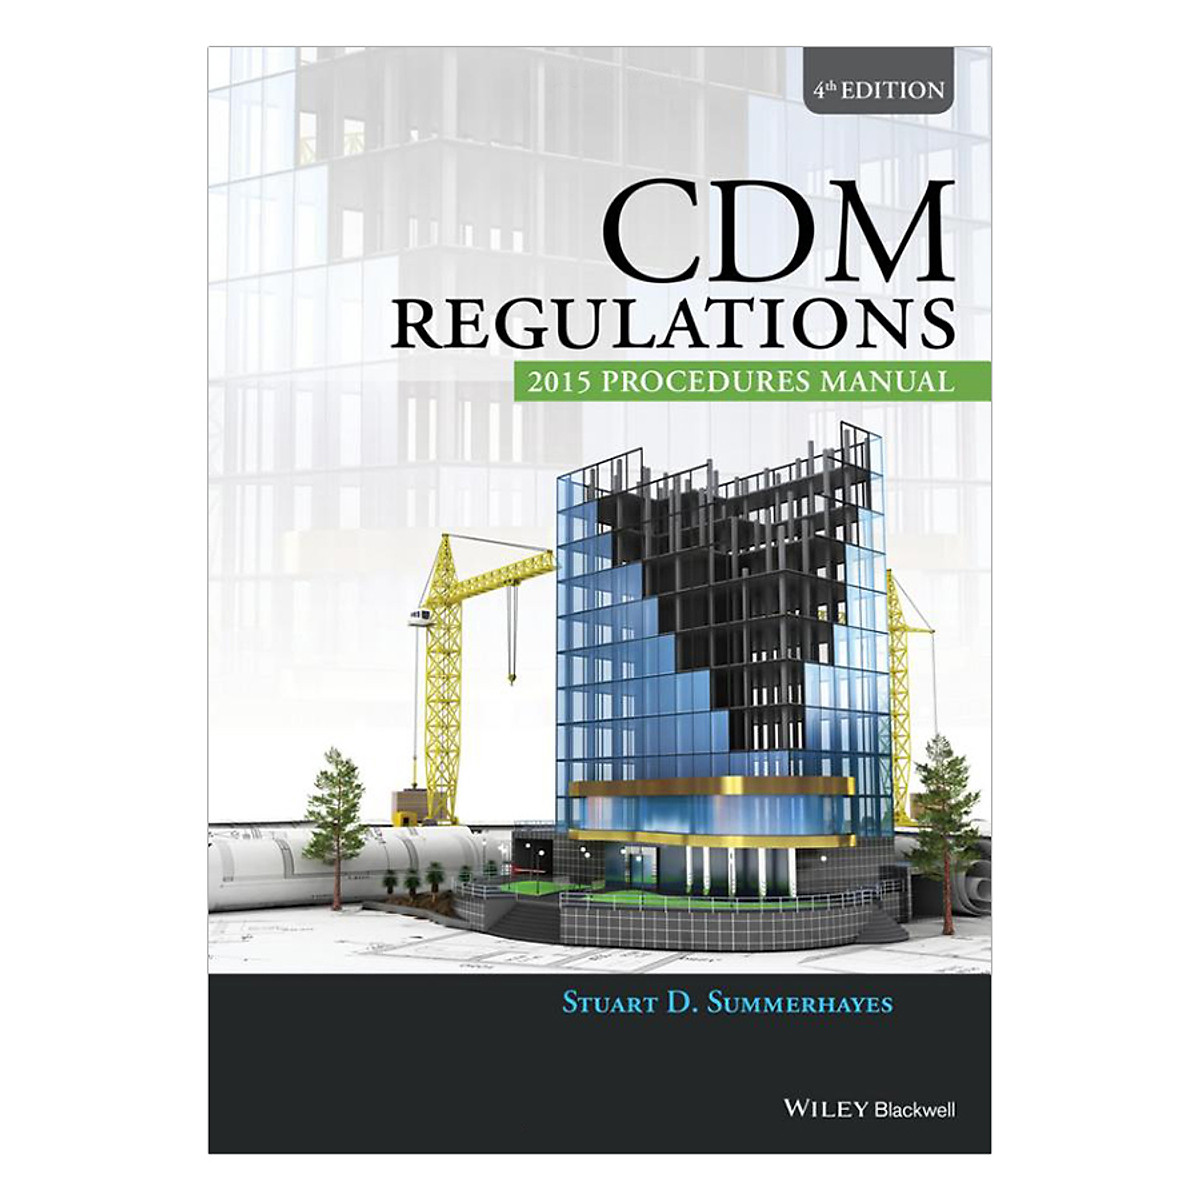 CDM Regulations 2015 Procedures Manual 4th Editon